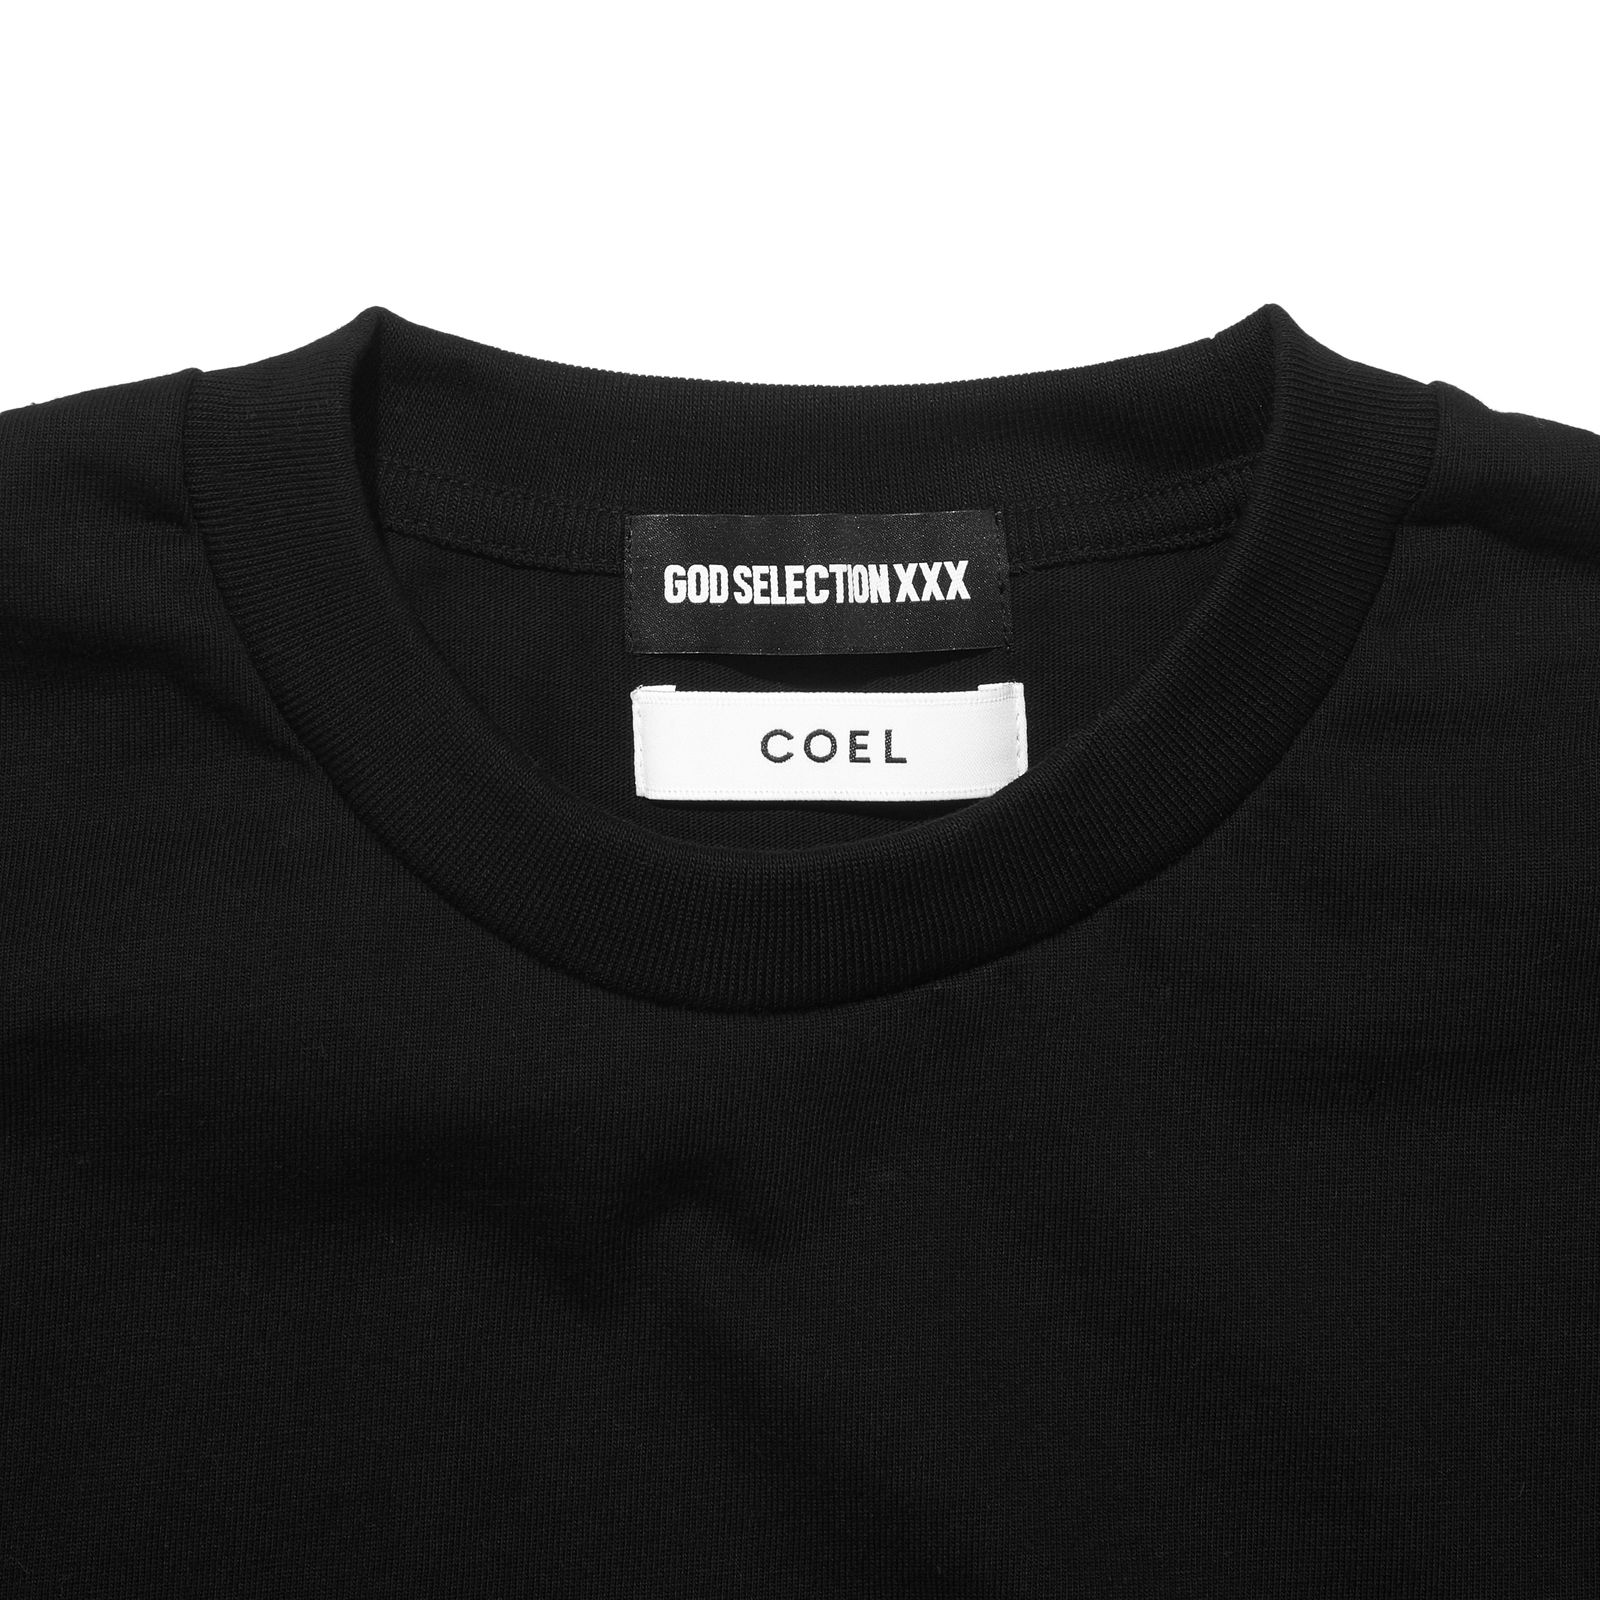 COEL× XXX コラボ TEEブラック Mサイズ コエルヨンア Tシャツトップス